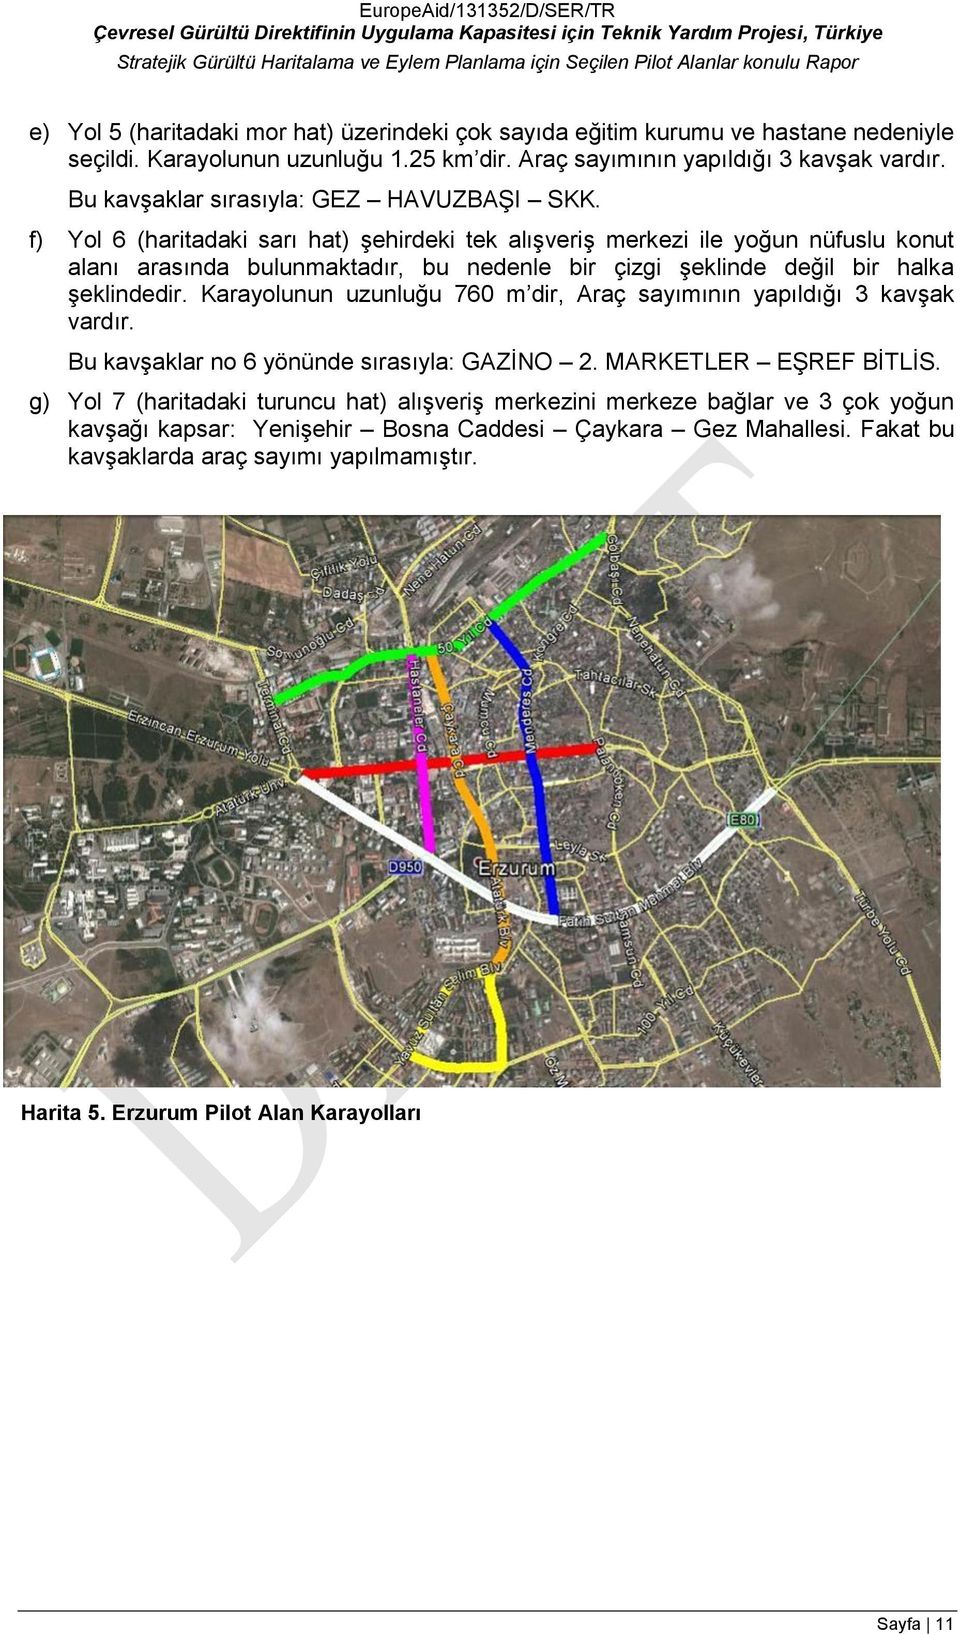 f) Yol 6 (haritadaki sarı hat) şehirdeki tek alışveriş merkezi ile yoğun nüfuslu konut alanı arasında bulunmaktadır, bu nedenle bir çizgi şeklinde değil bir halka şeklindedir.